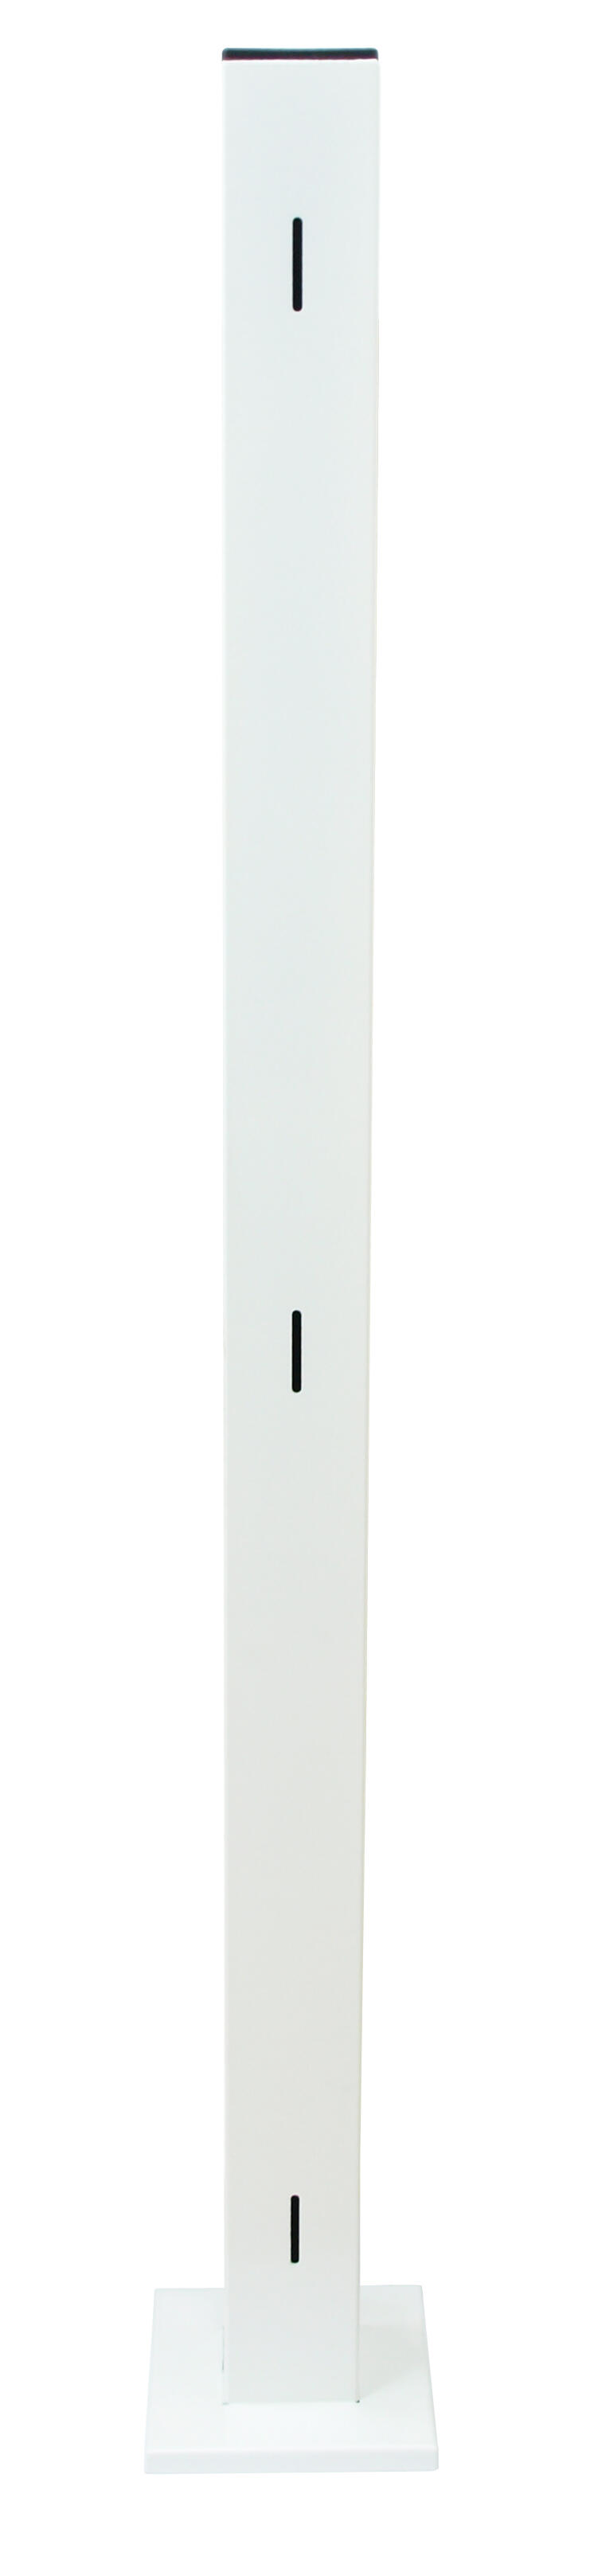 Poste de esquina acero galvanizado blanco 100x13 cm